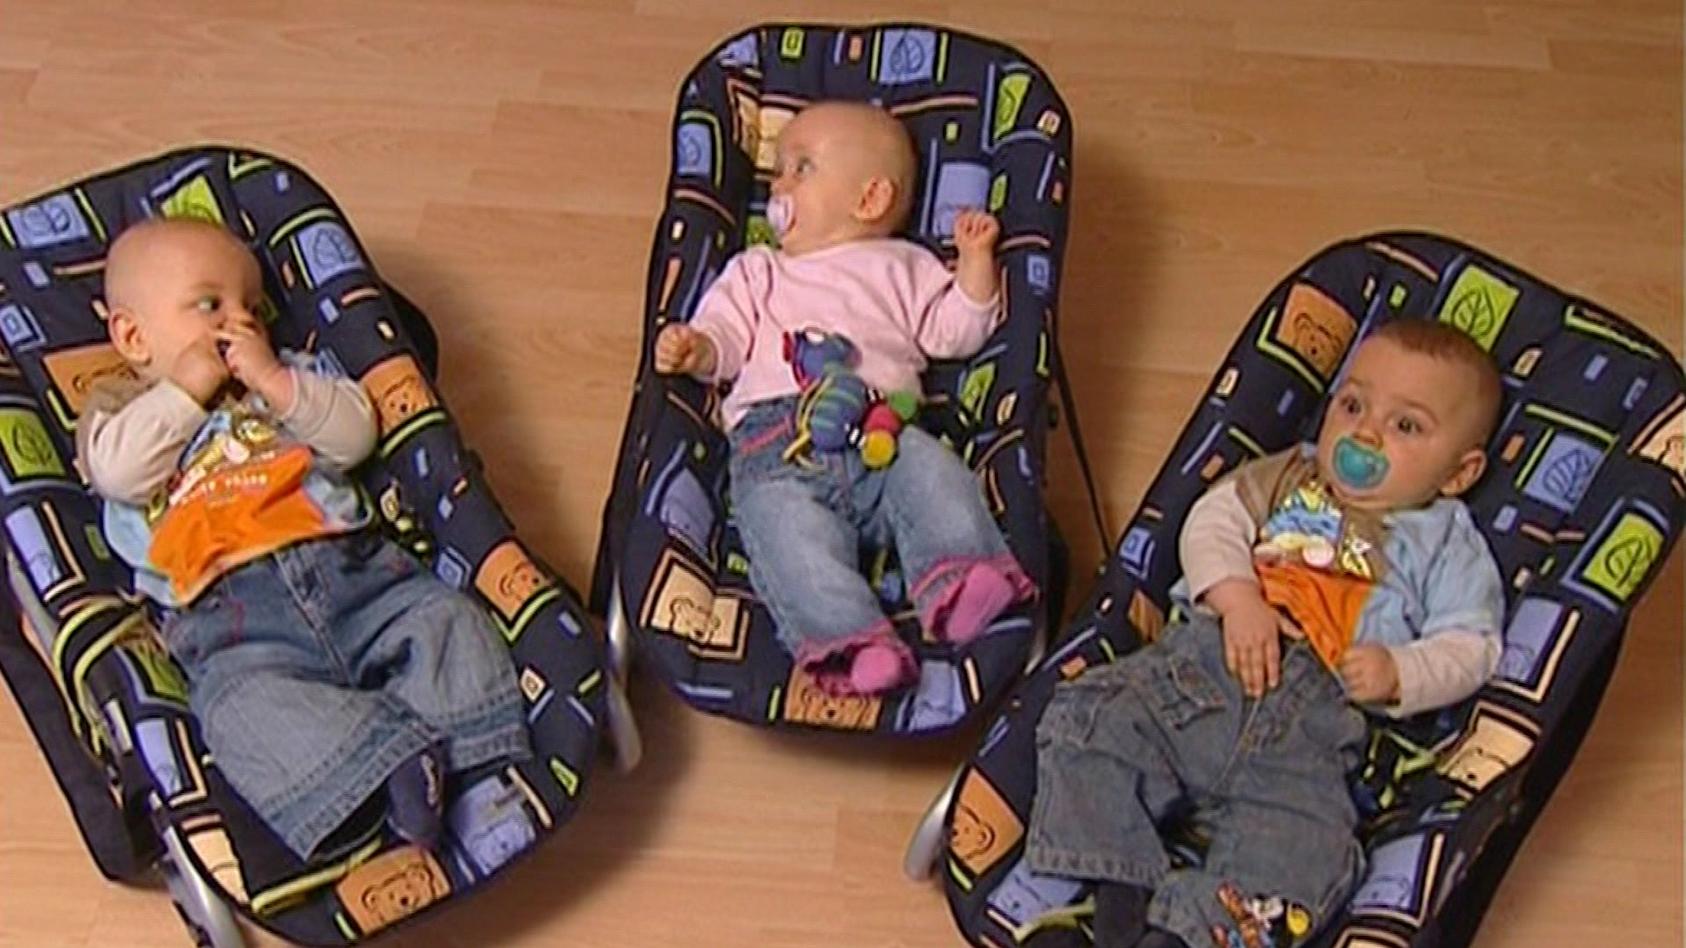 Twins Baby Rückspiegel für Kindersitz und